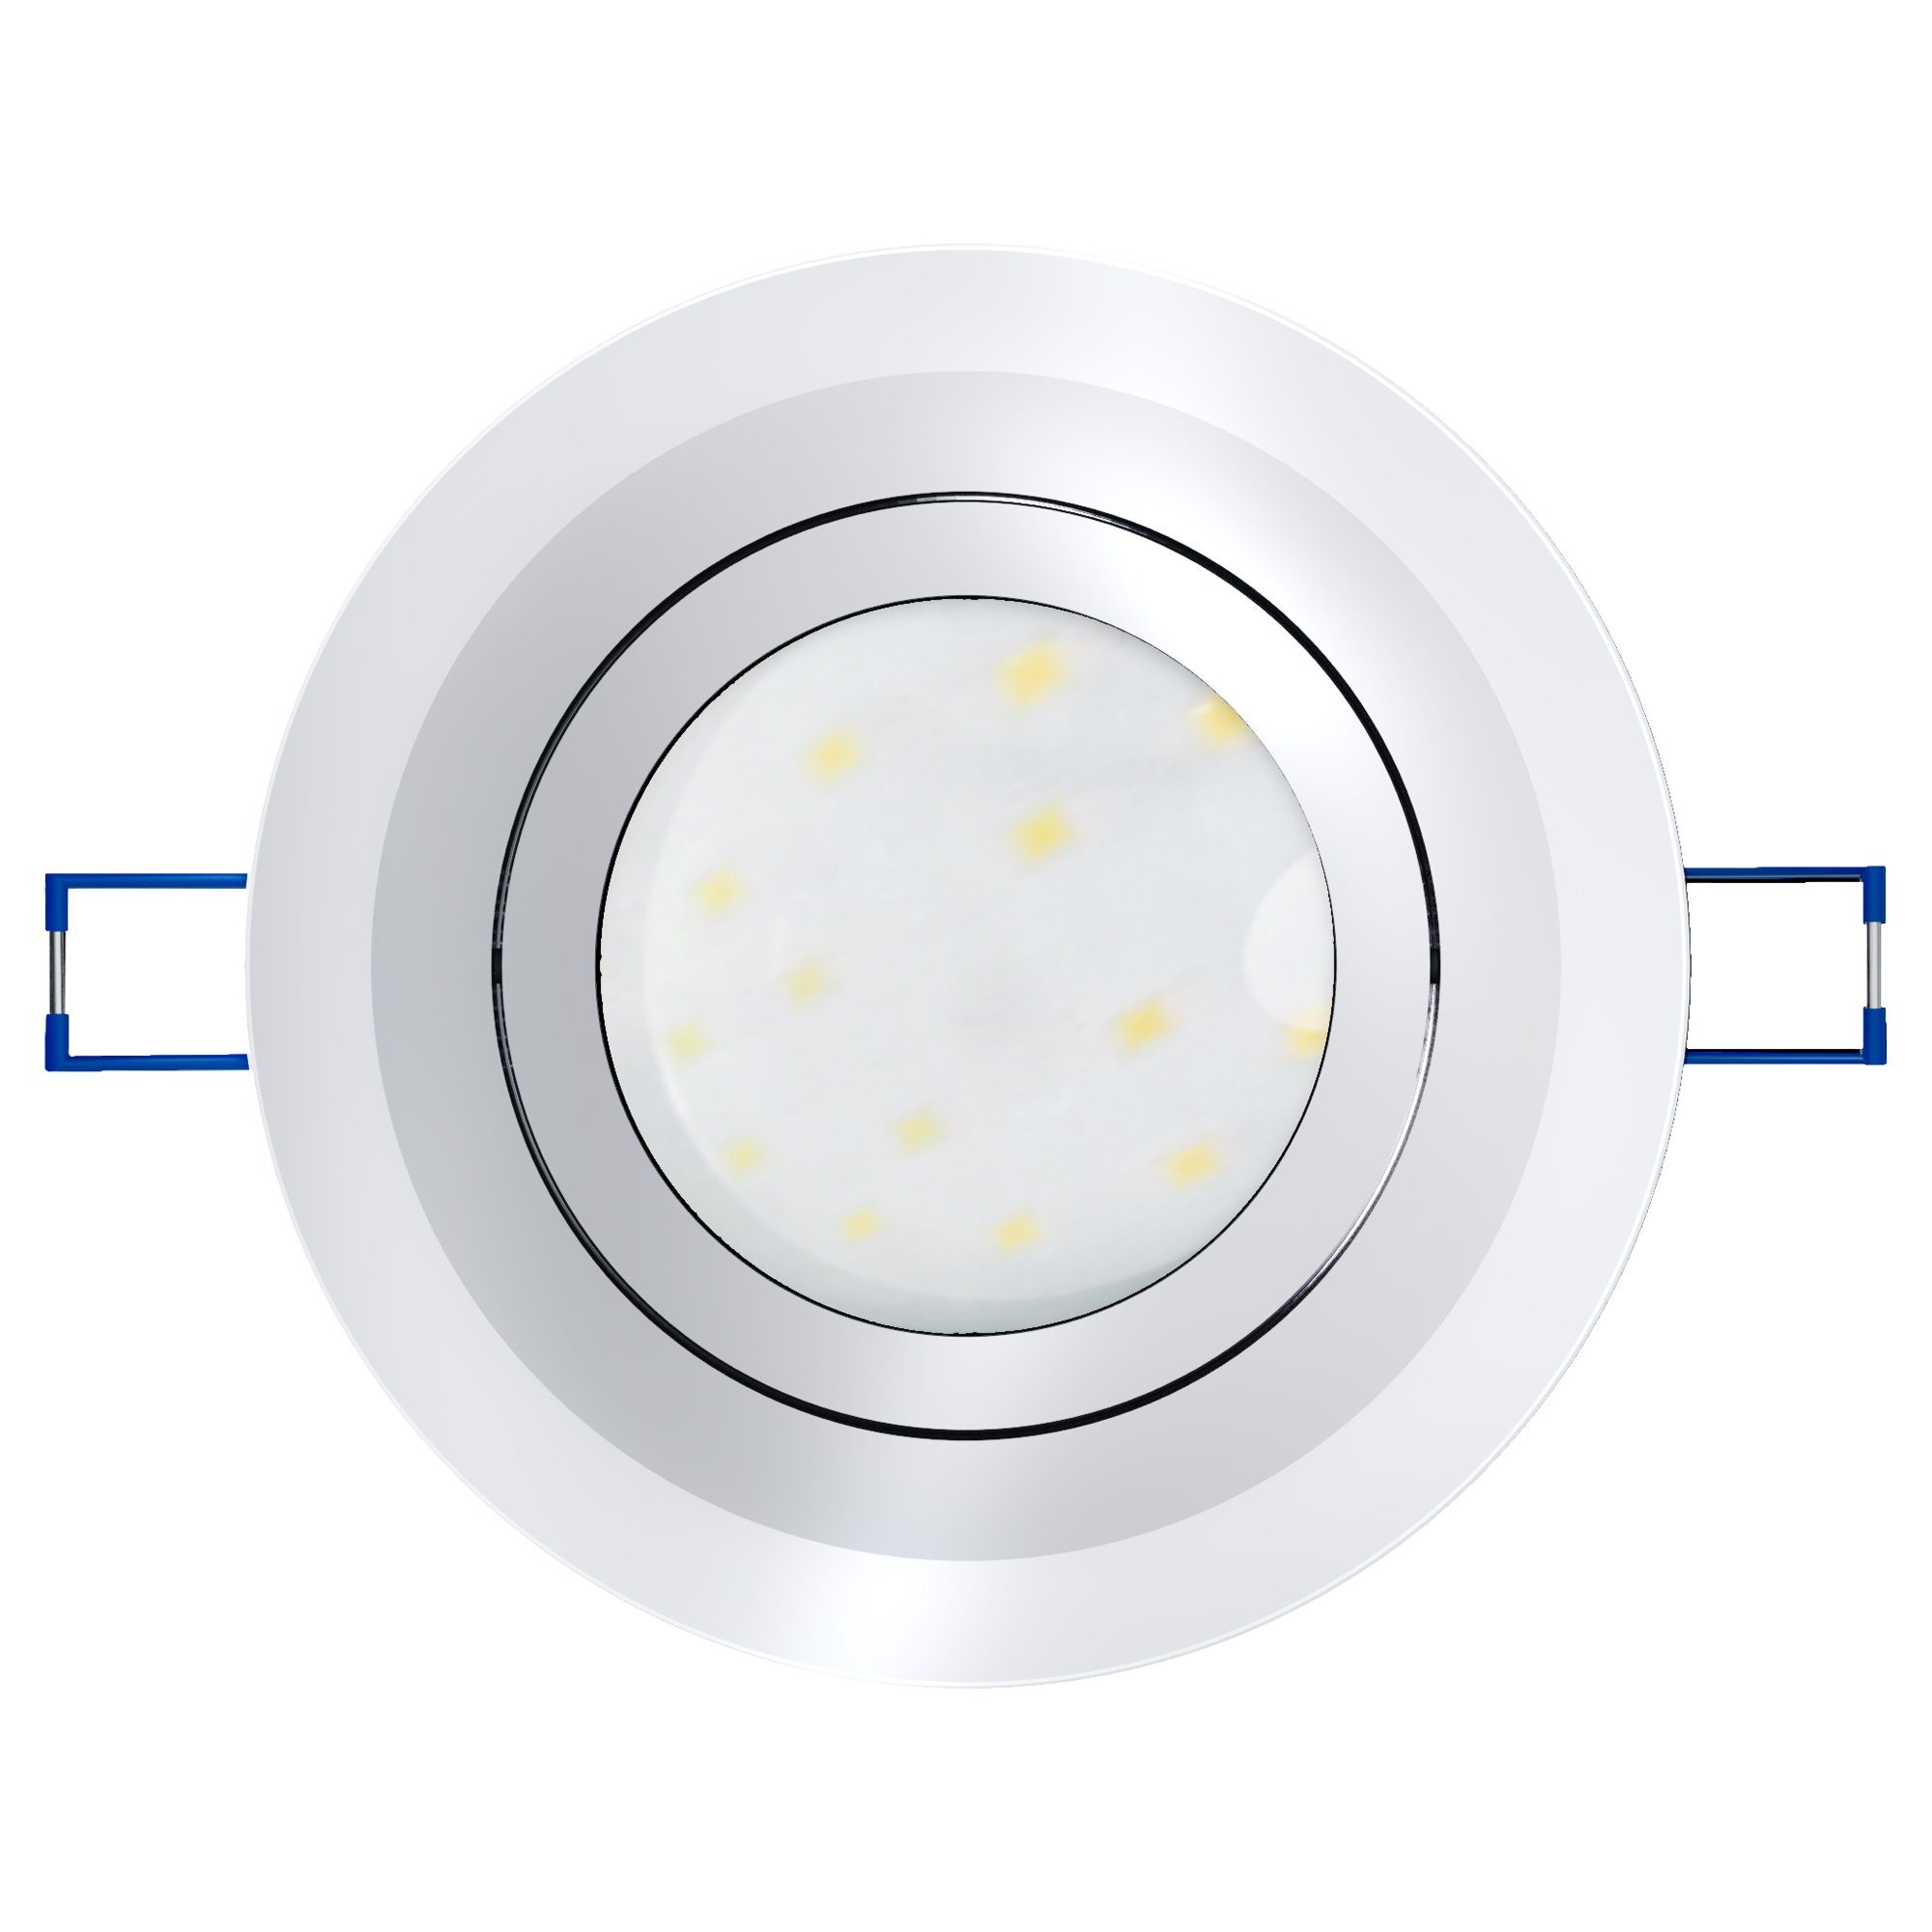 Modul, mit dimmbar Glas Flache LED LED Einbaustrahler & LED schwenkbar rund Einbauleuchte SSC-LUXon Warmweiß